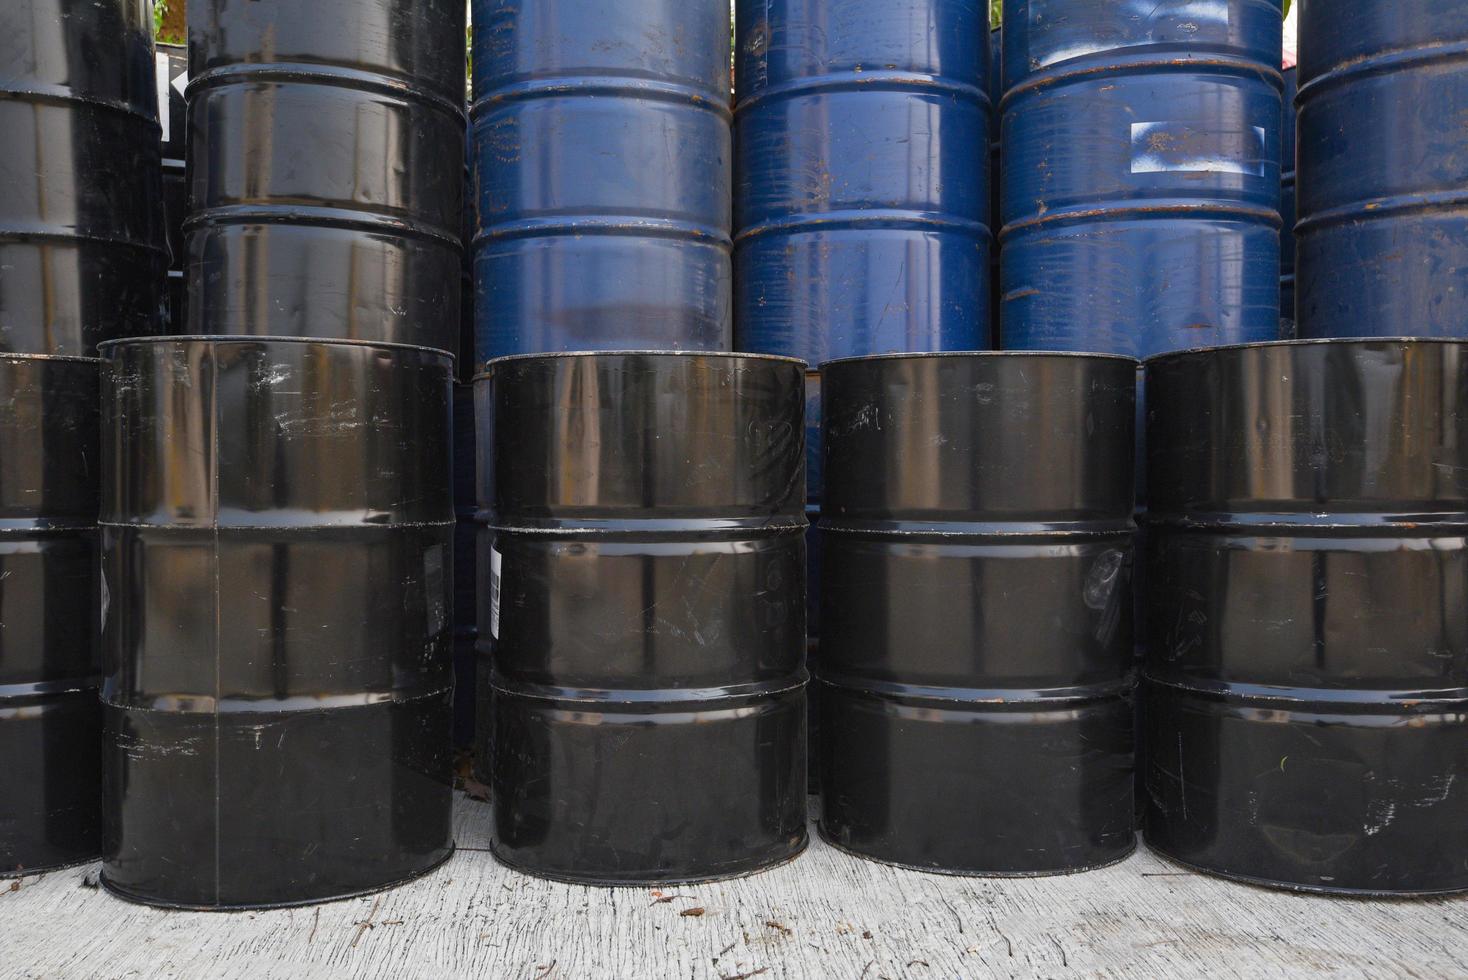 vieux barils de pétrole ou fûts chimiques empilés, baril de pétrole de l'industrie photo